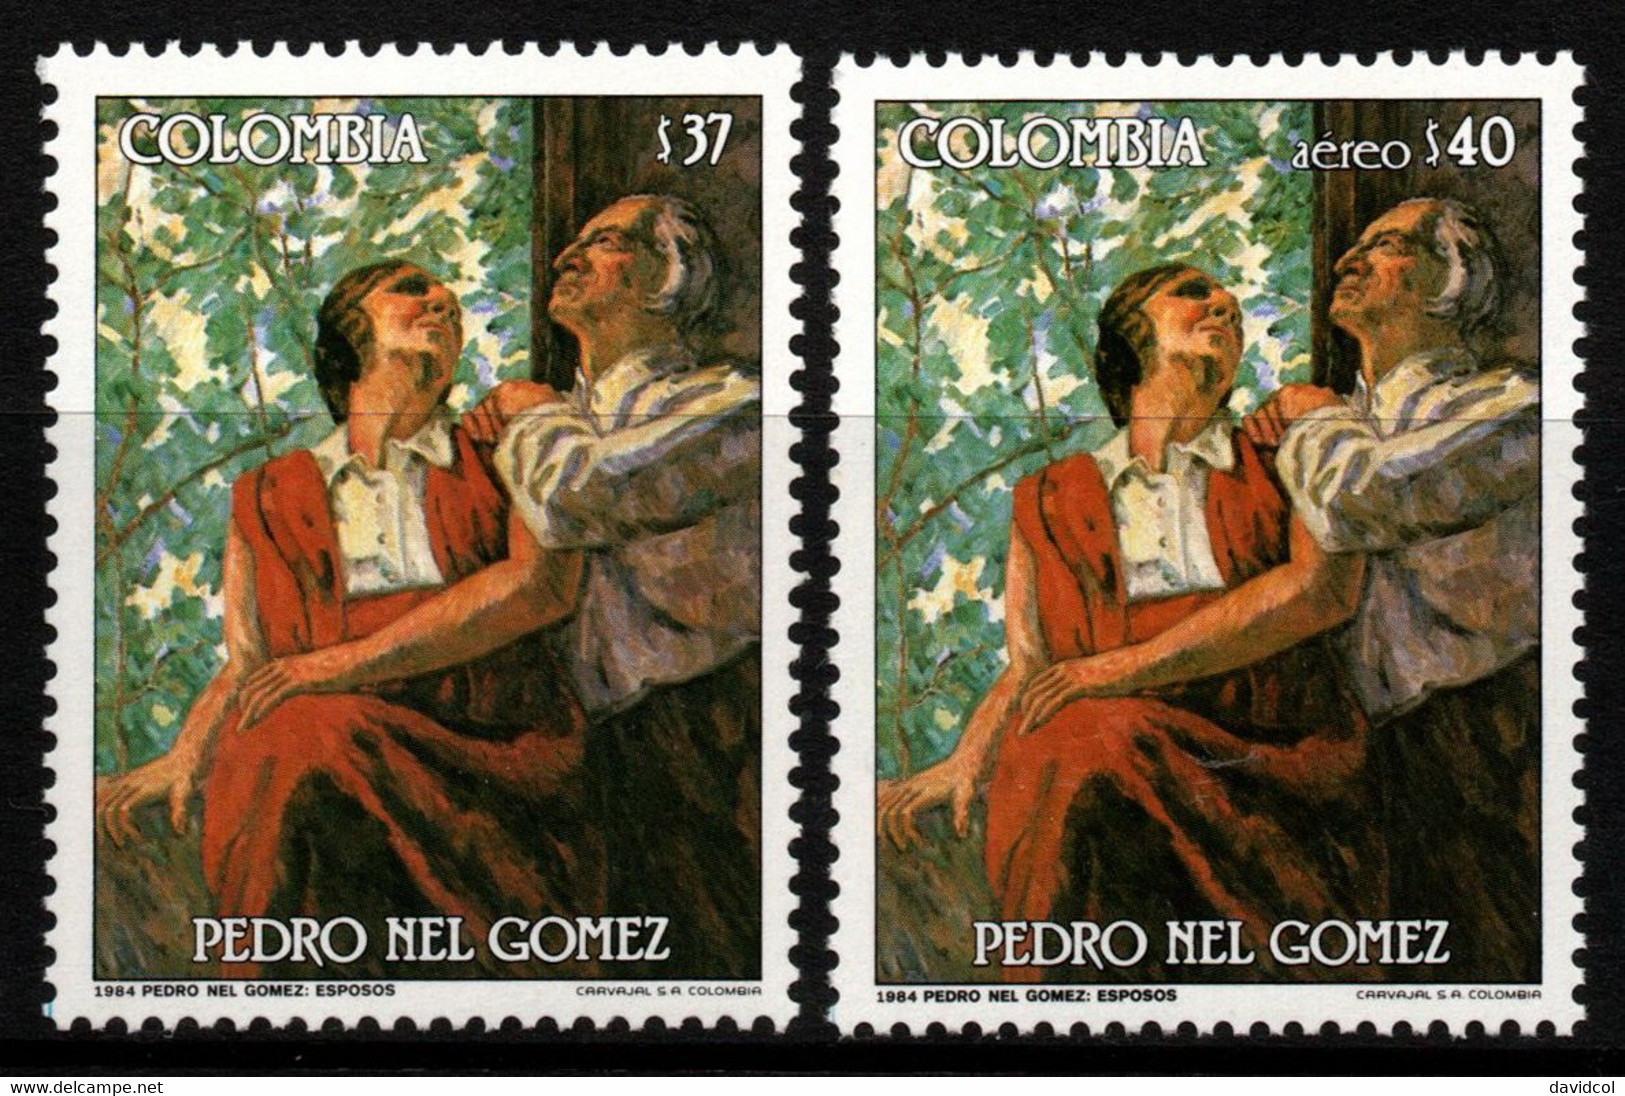 03- KOLUMBIEN - 1985- MI#:1647,1648- MNH- PEDRO NEL GOMEZ - Colombia